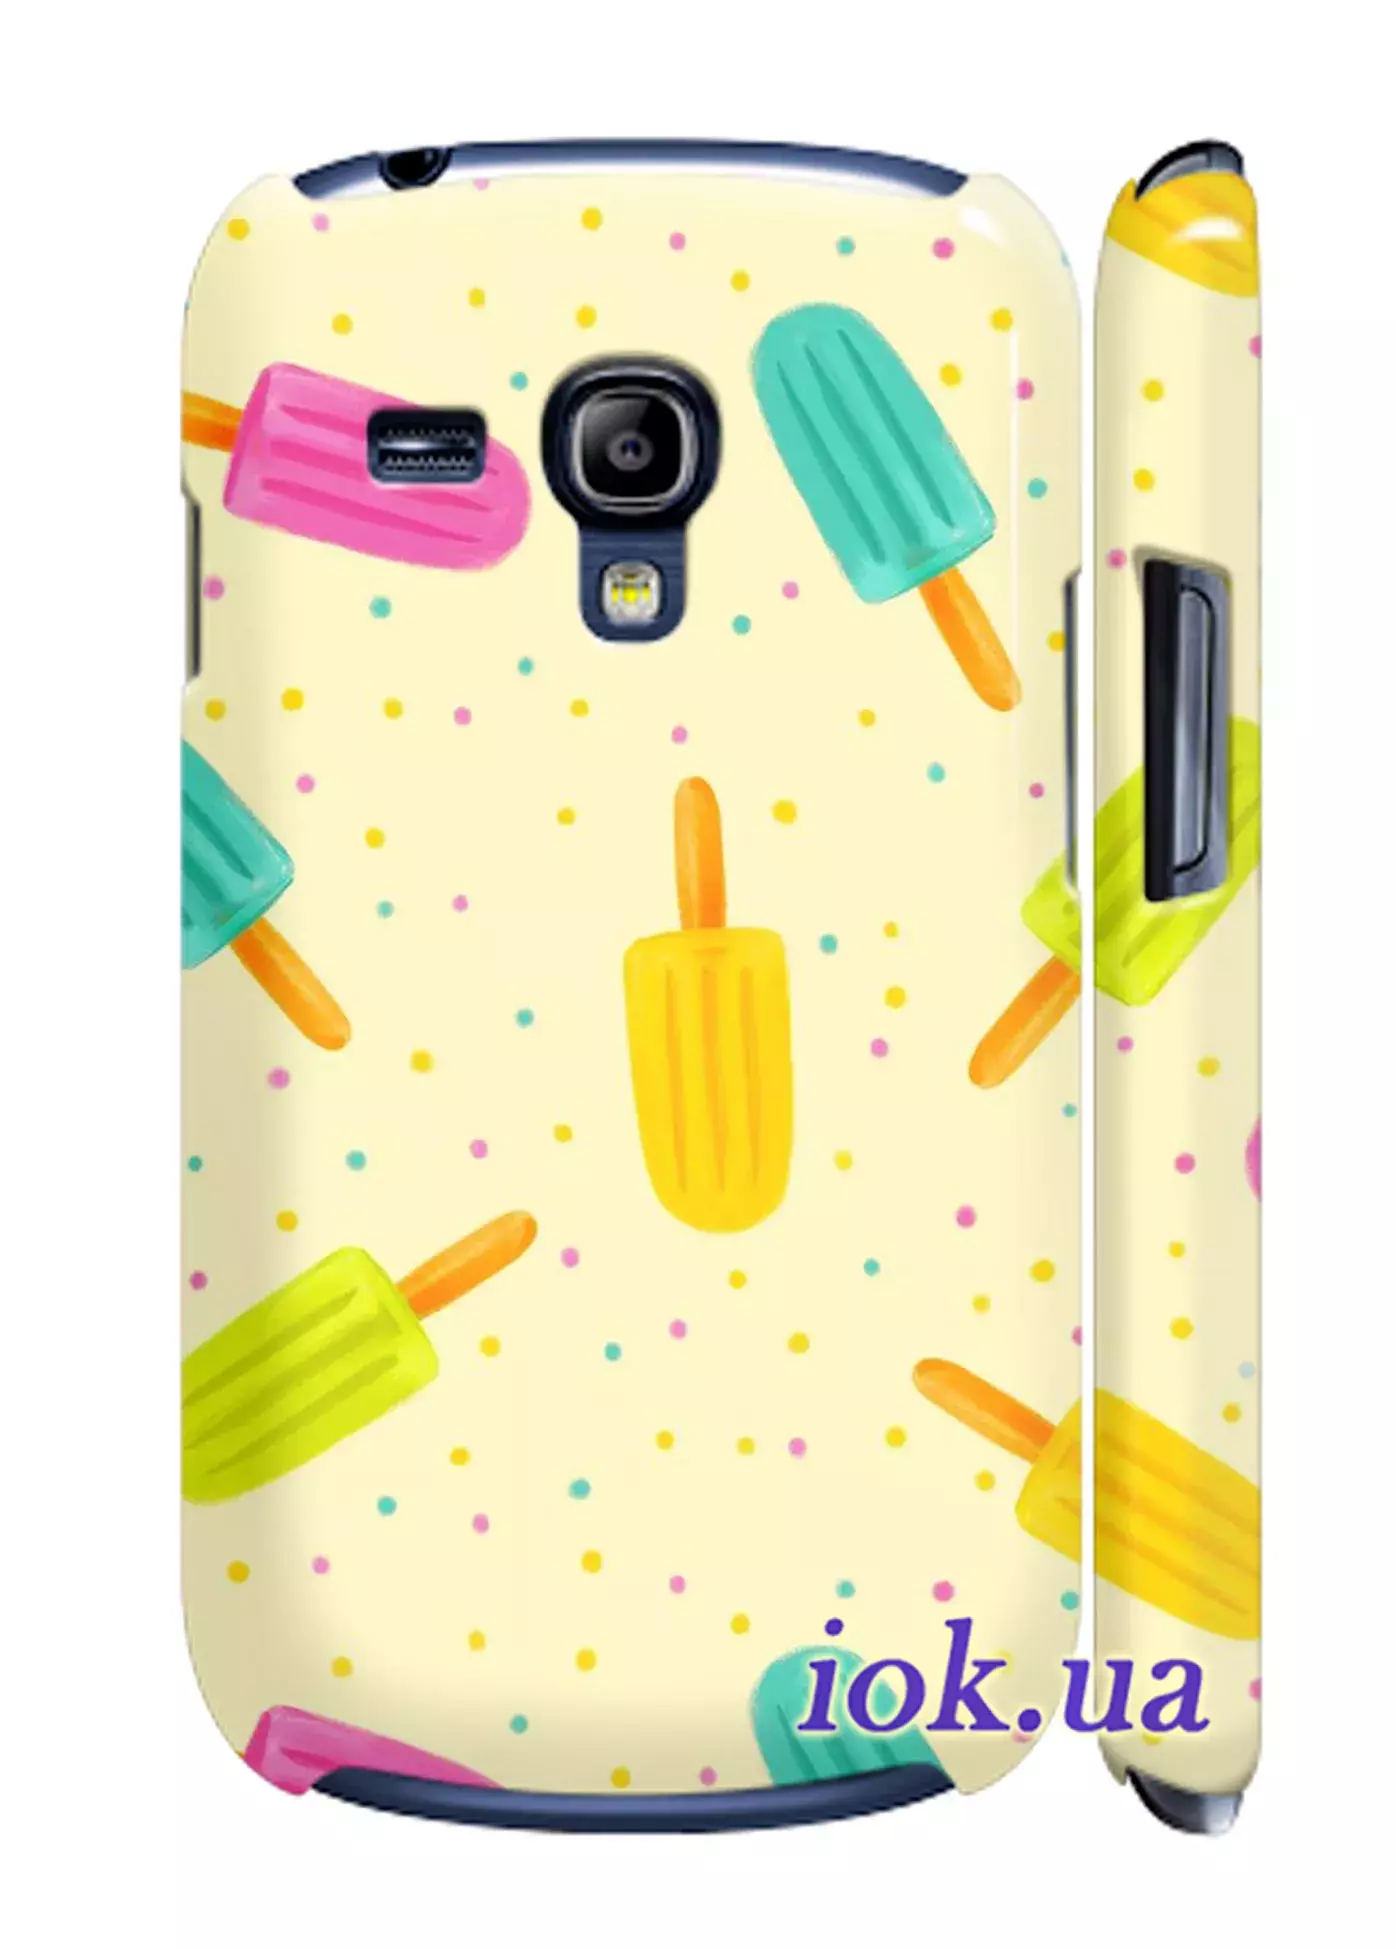 Чехол для Galaxy S3 Mini - Цветное мороженное